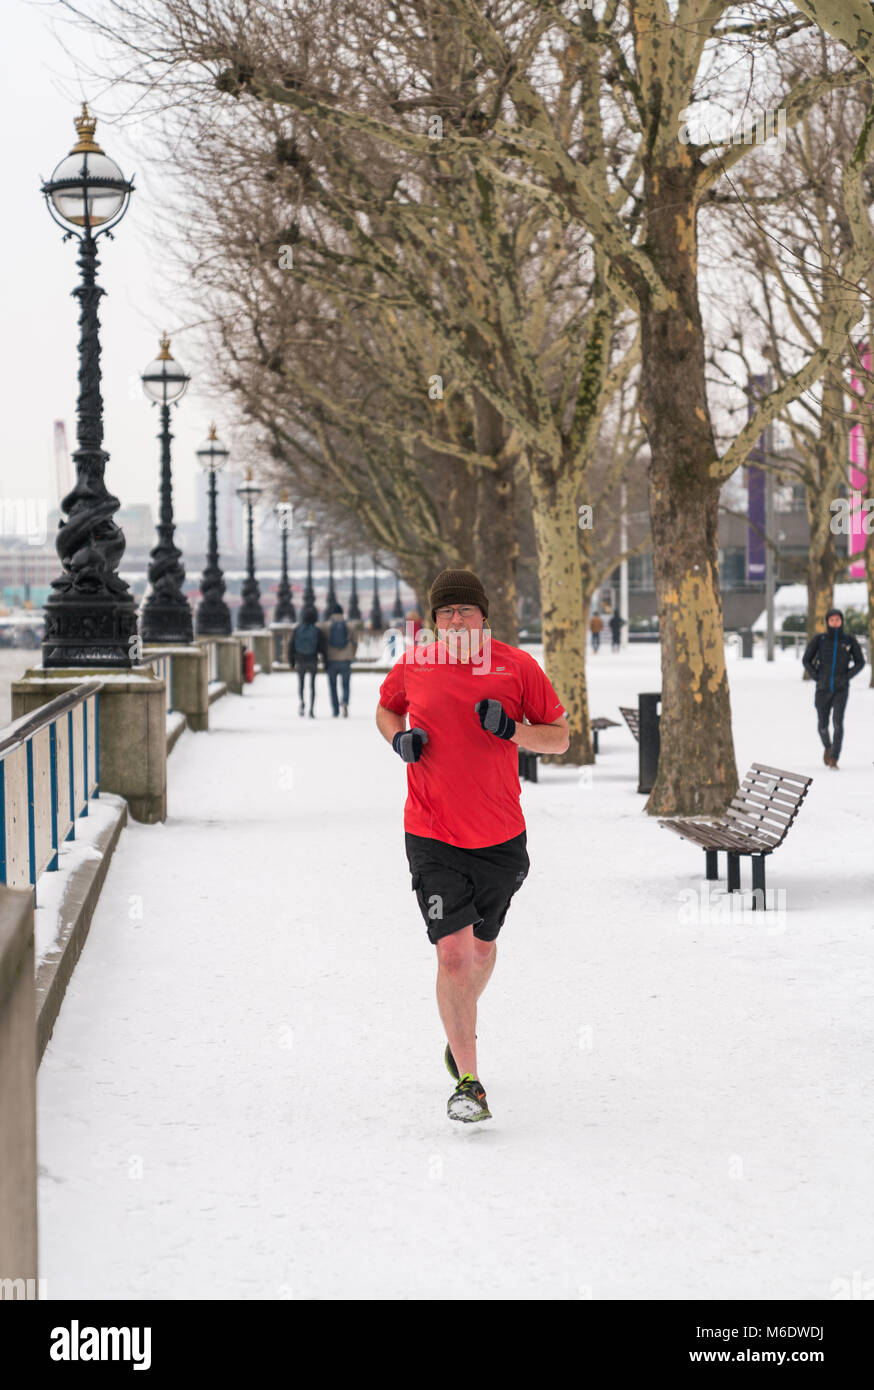 01 mars 2018 - Londres, Angleterre. Un homme portant des shorts, courir sur la neige, en bas du talus par temps froid. Banque D'Images